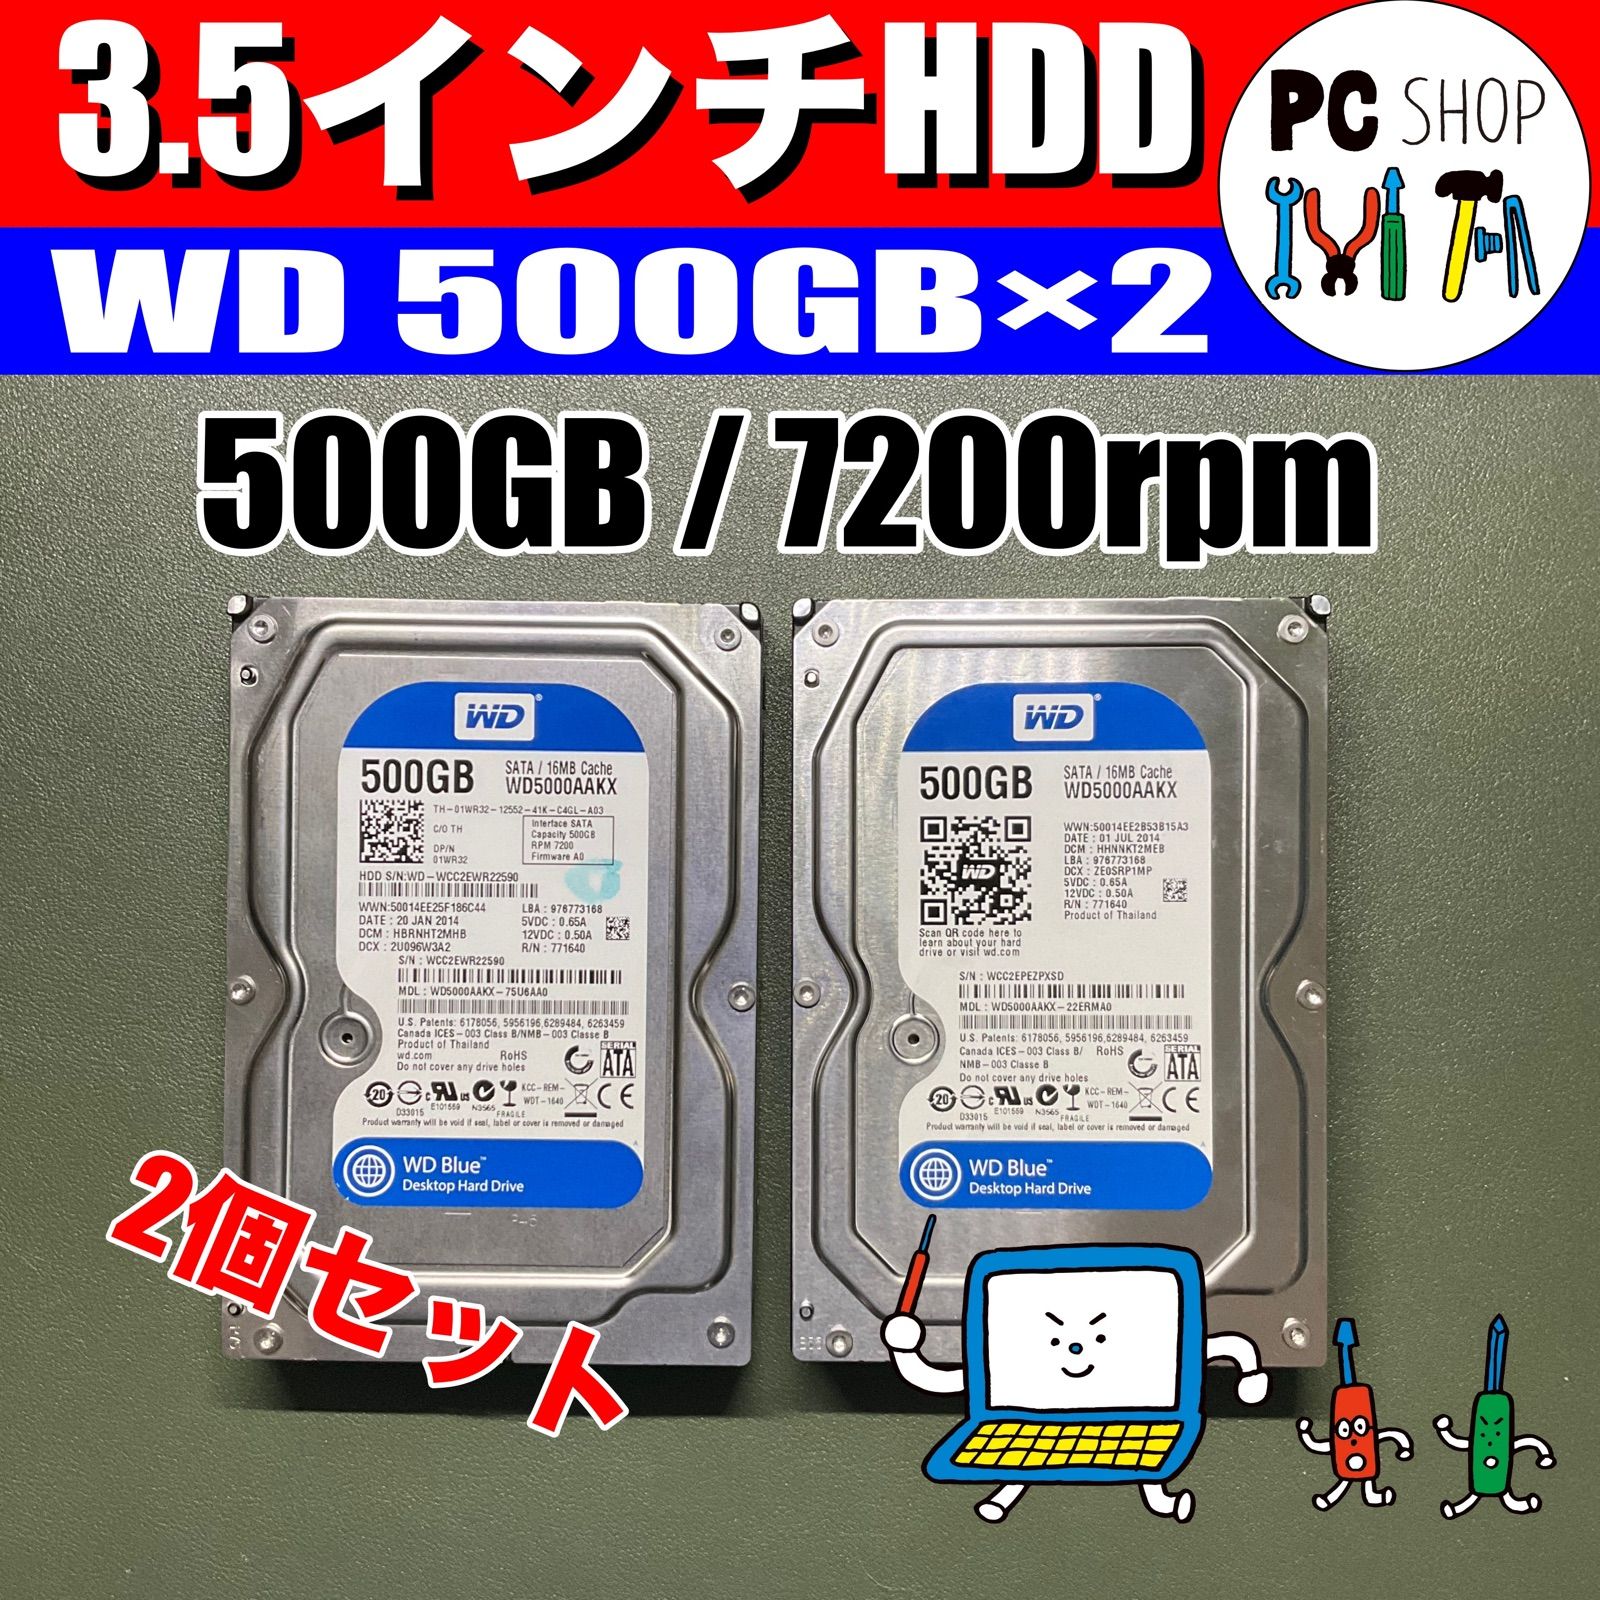 MA-010086]ハードディスク HDD 500GB 2本セット 3.5インチ パーツ - PC